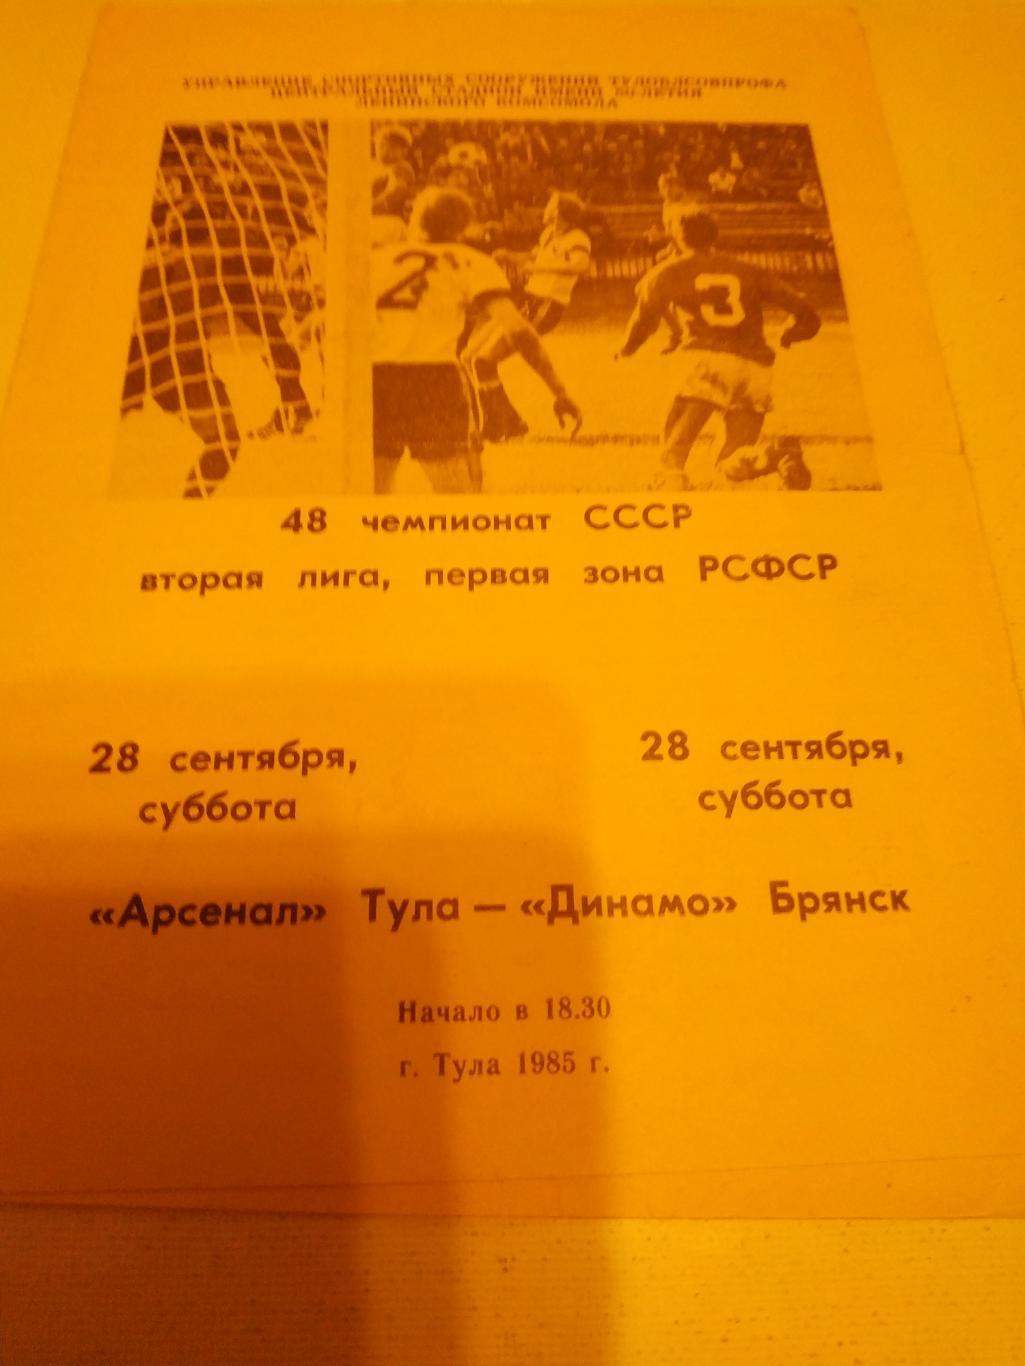 Арсенал Тула - Динамо Брянск 1986